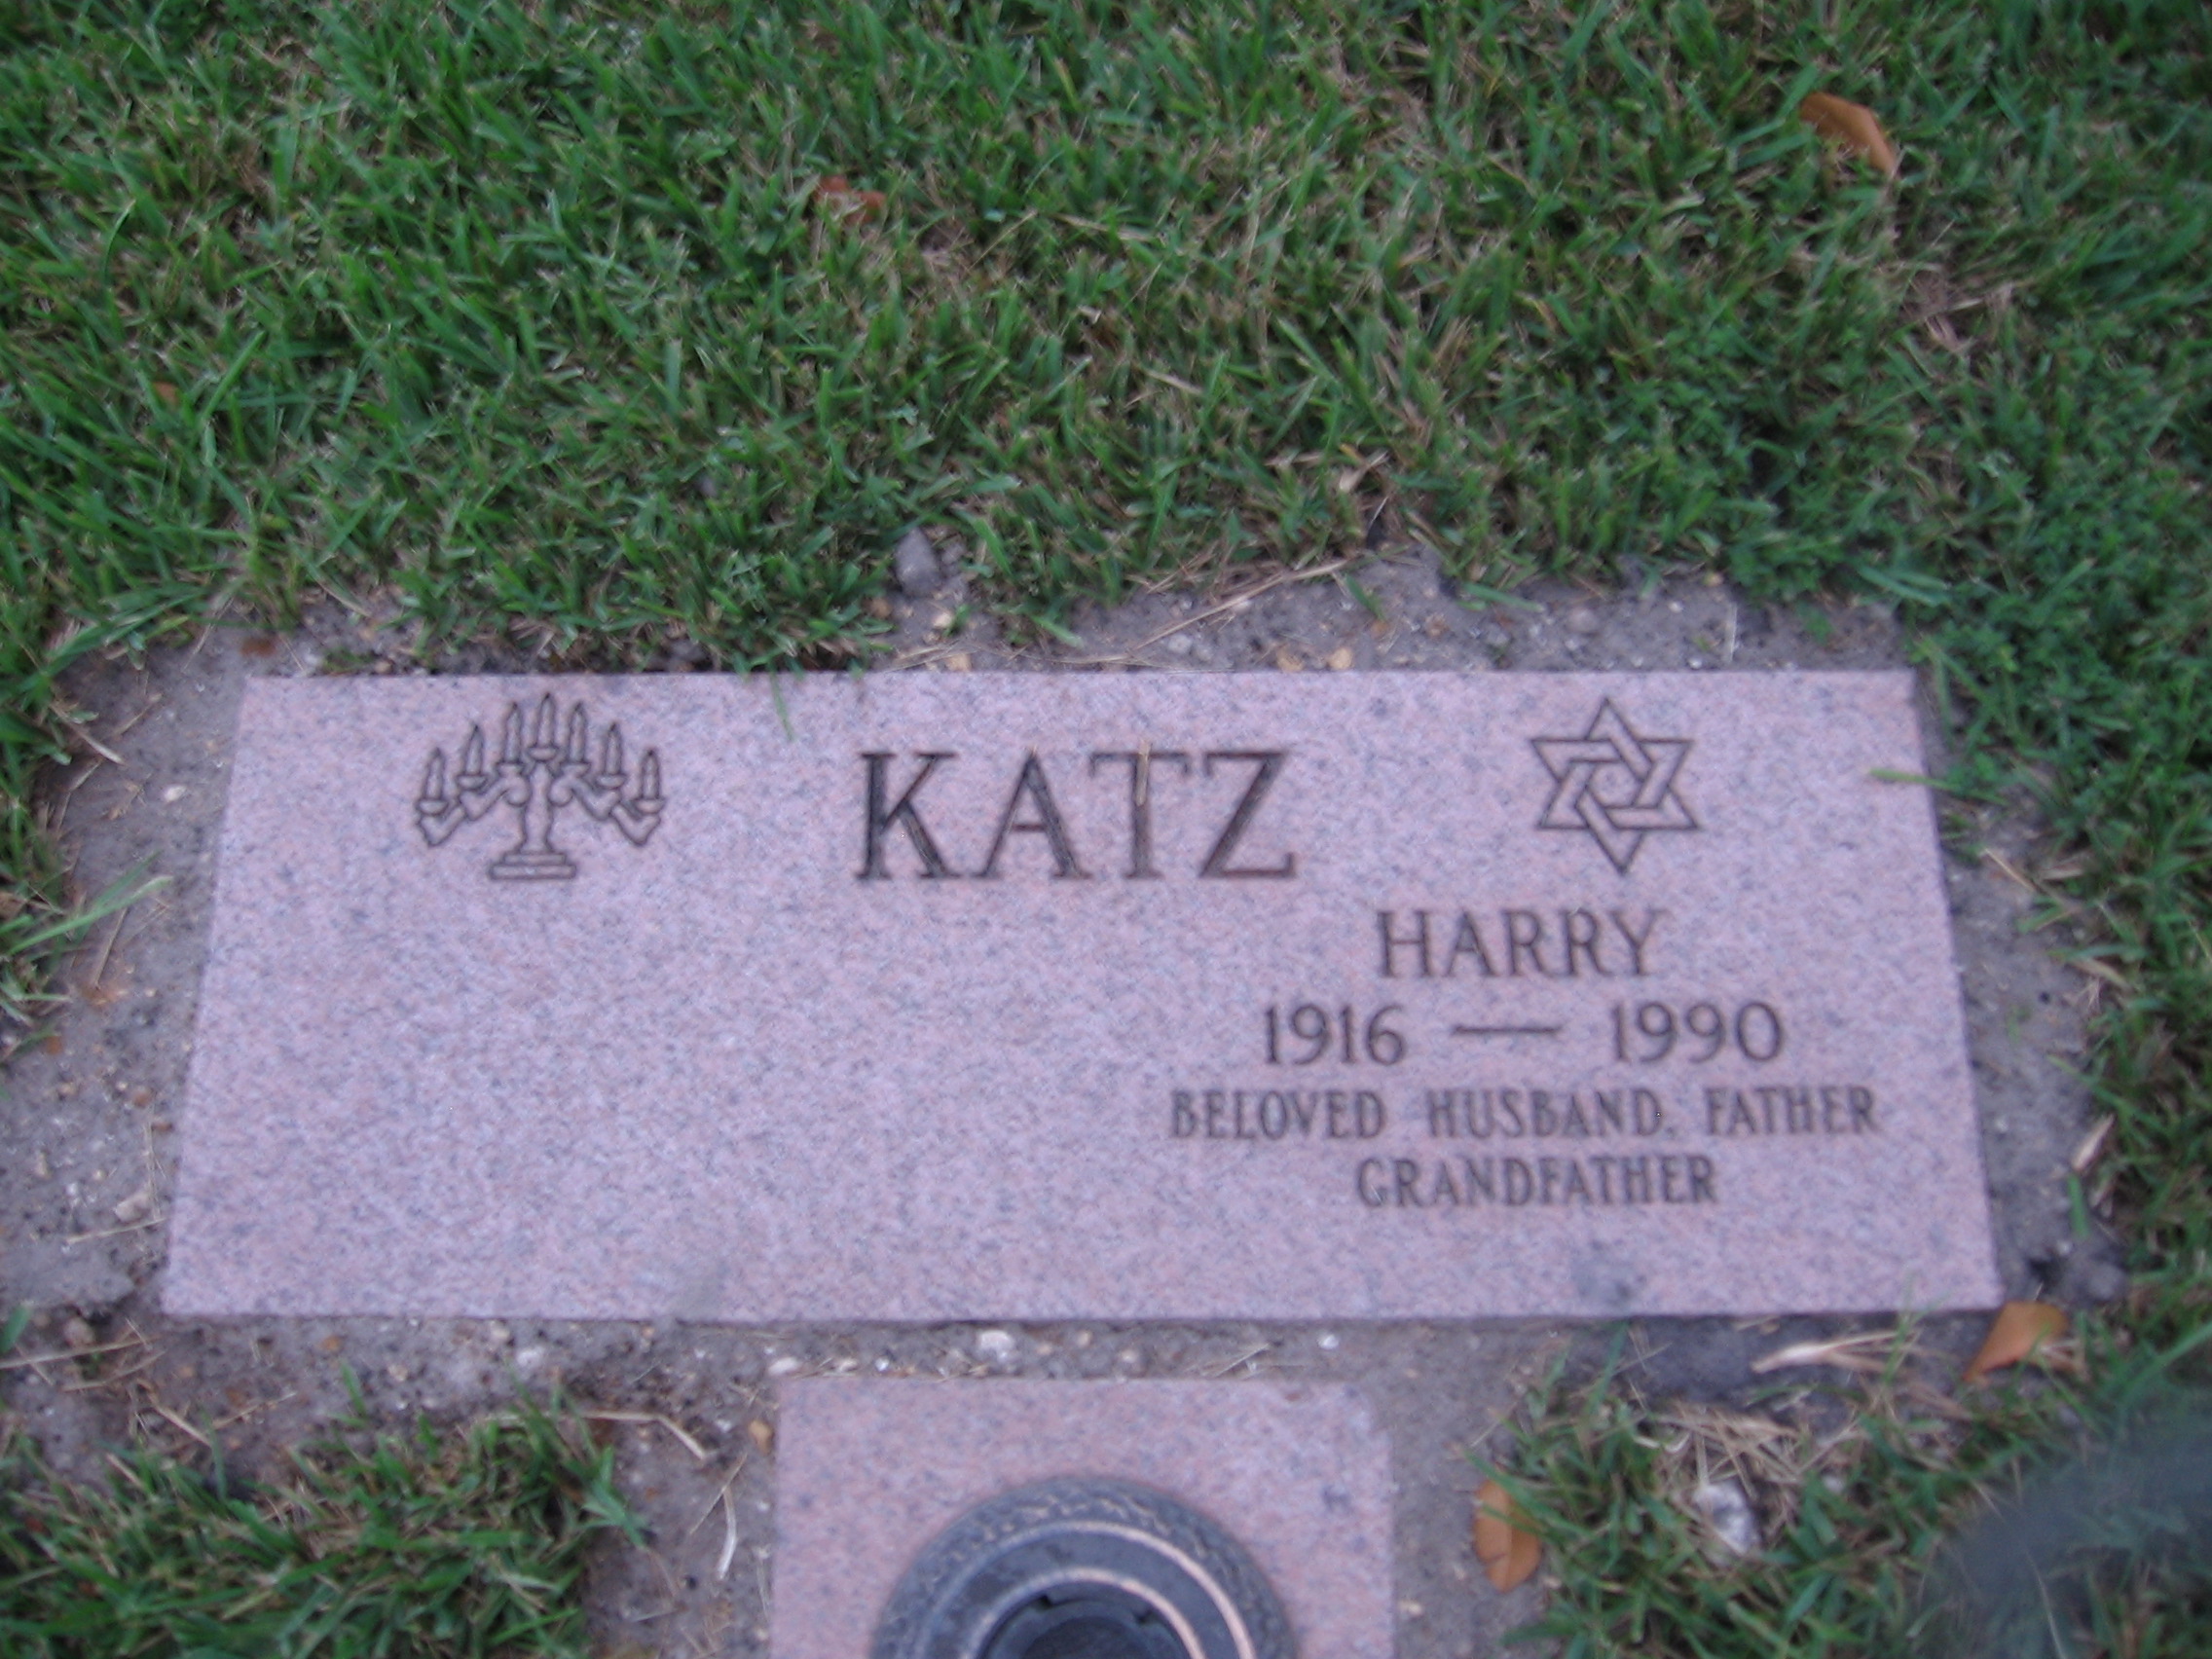 Harry Katz